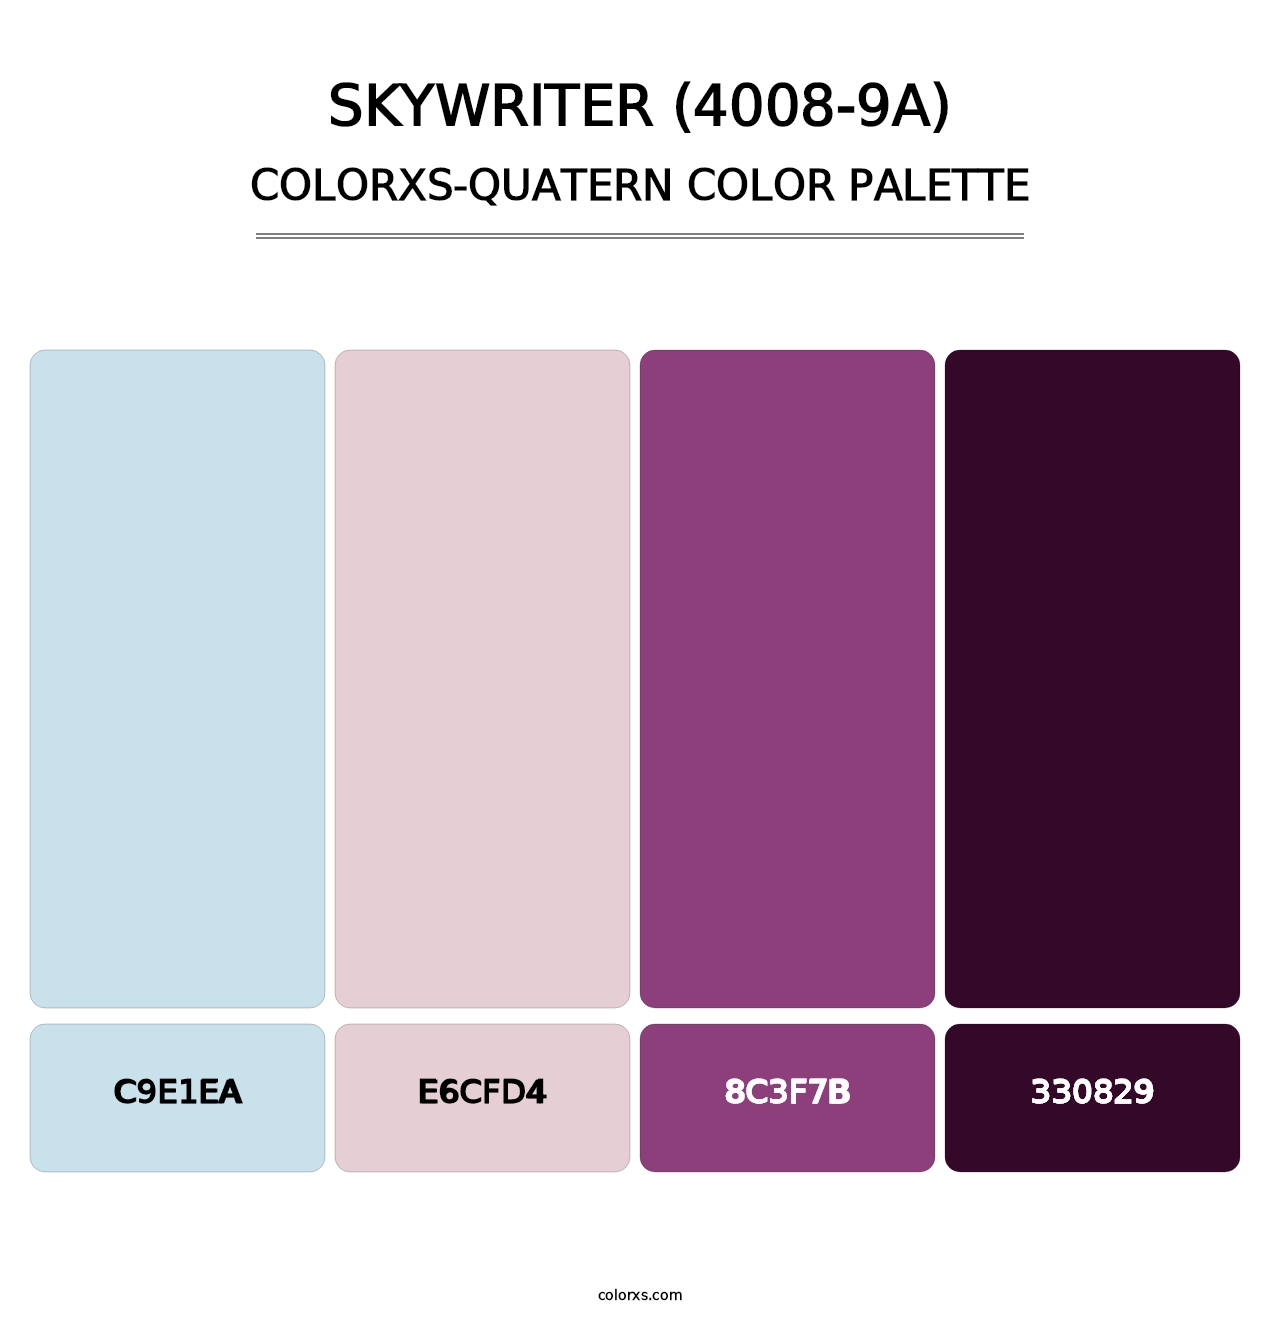 Skywriter (4008-9A) - Colorxs Quatern Palette